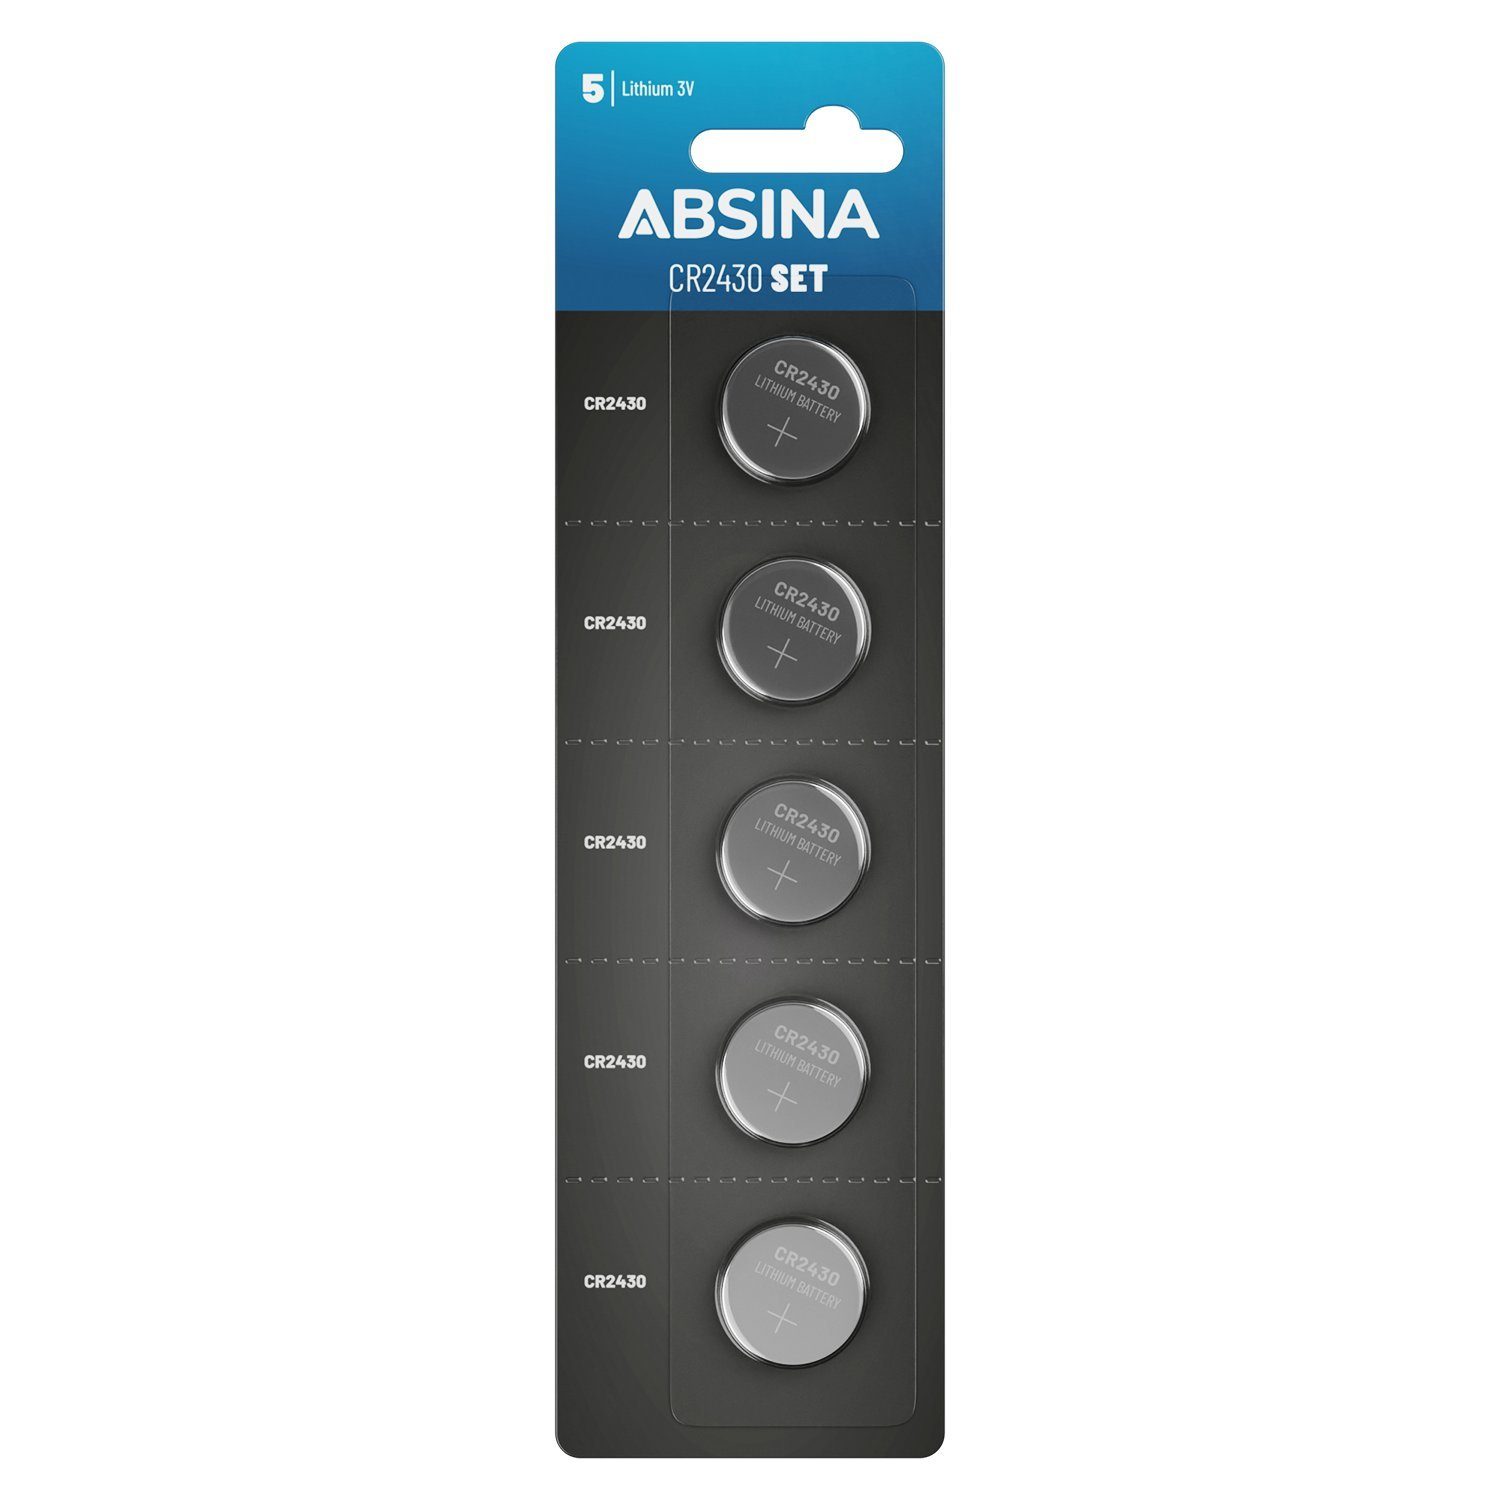 ABSINA CR2430 Knopfzelle 5er Knopfbatterie 2430 Pack 3V St) CR (1 - Knopfzelle, Knopfzellen